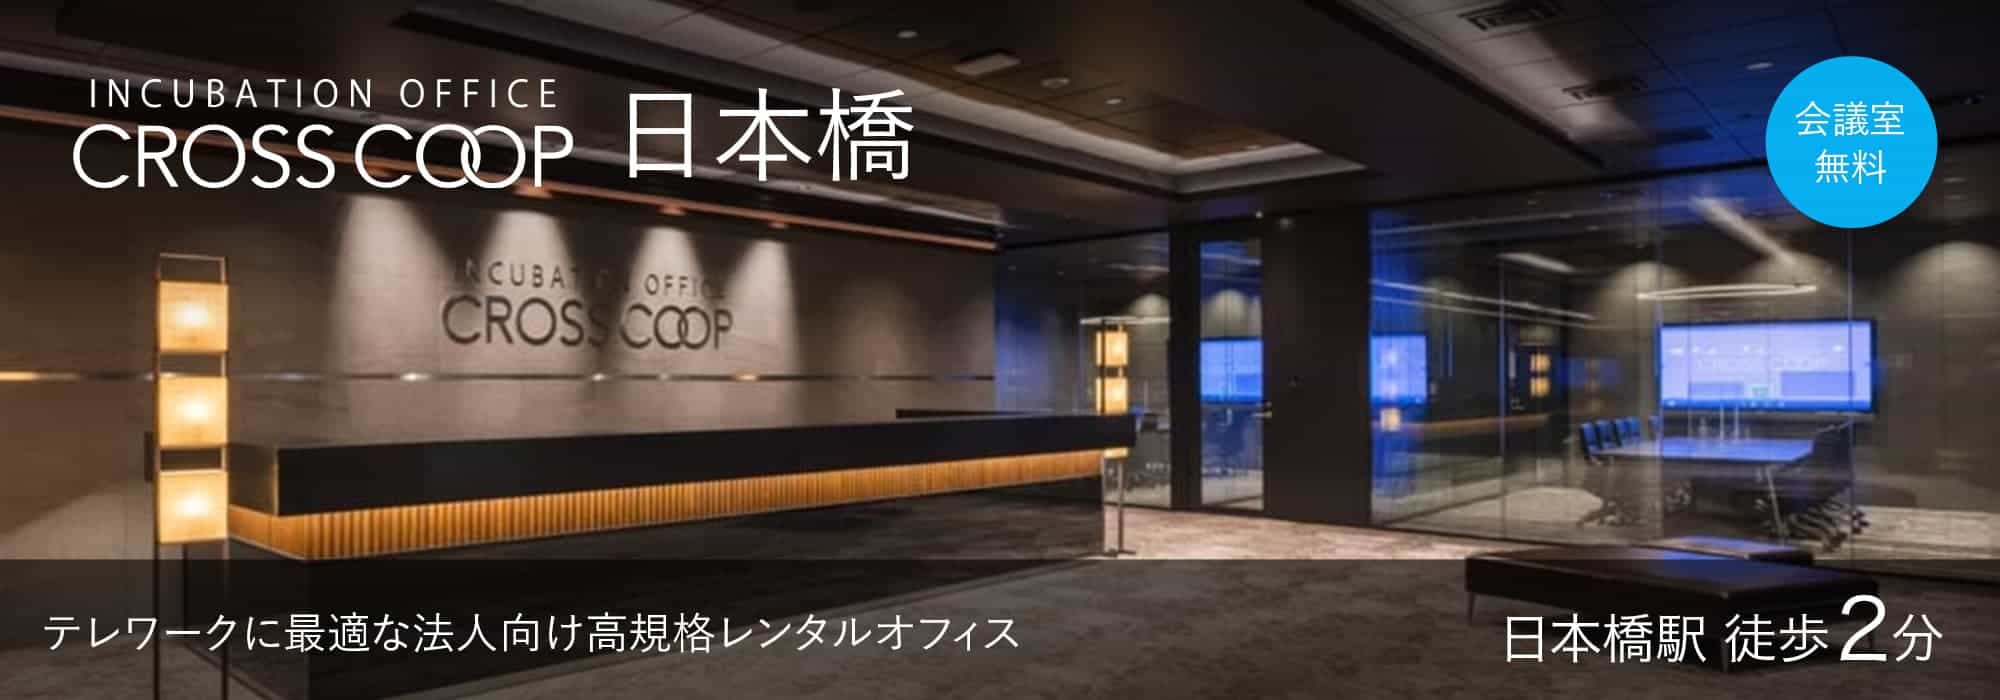 東京の高規格レンタルオフィス「CROSSCOOP日本橋」日本橋駅から徒歩2分、テレワークに最適な法人向けオフィス